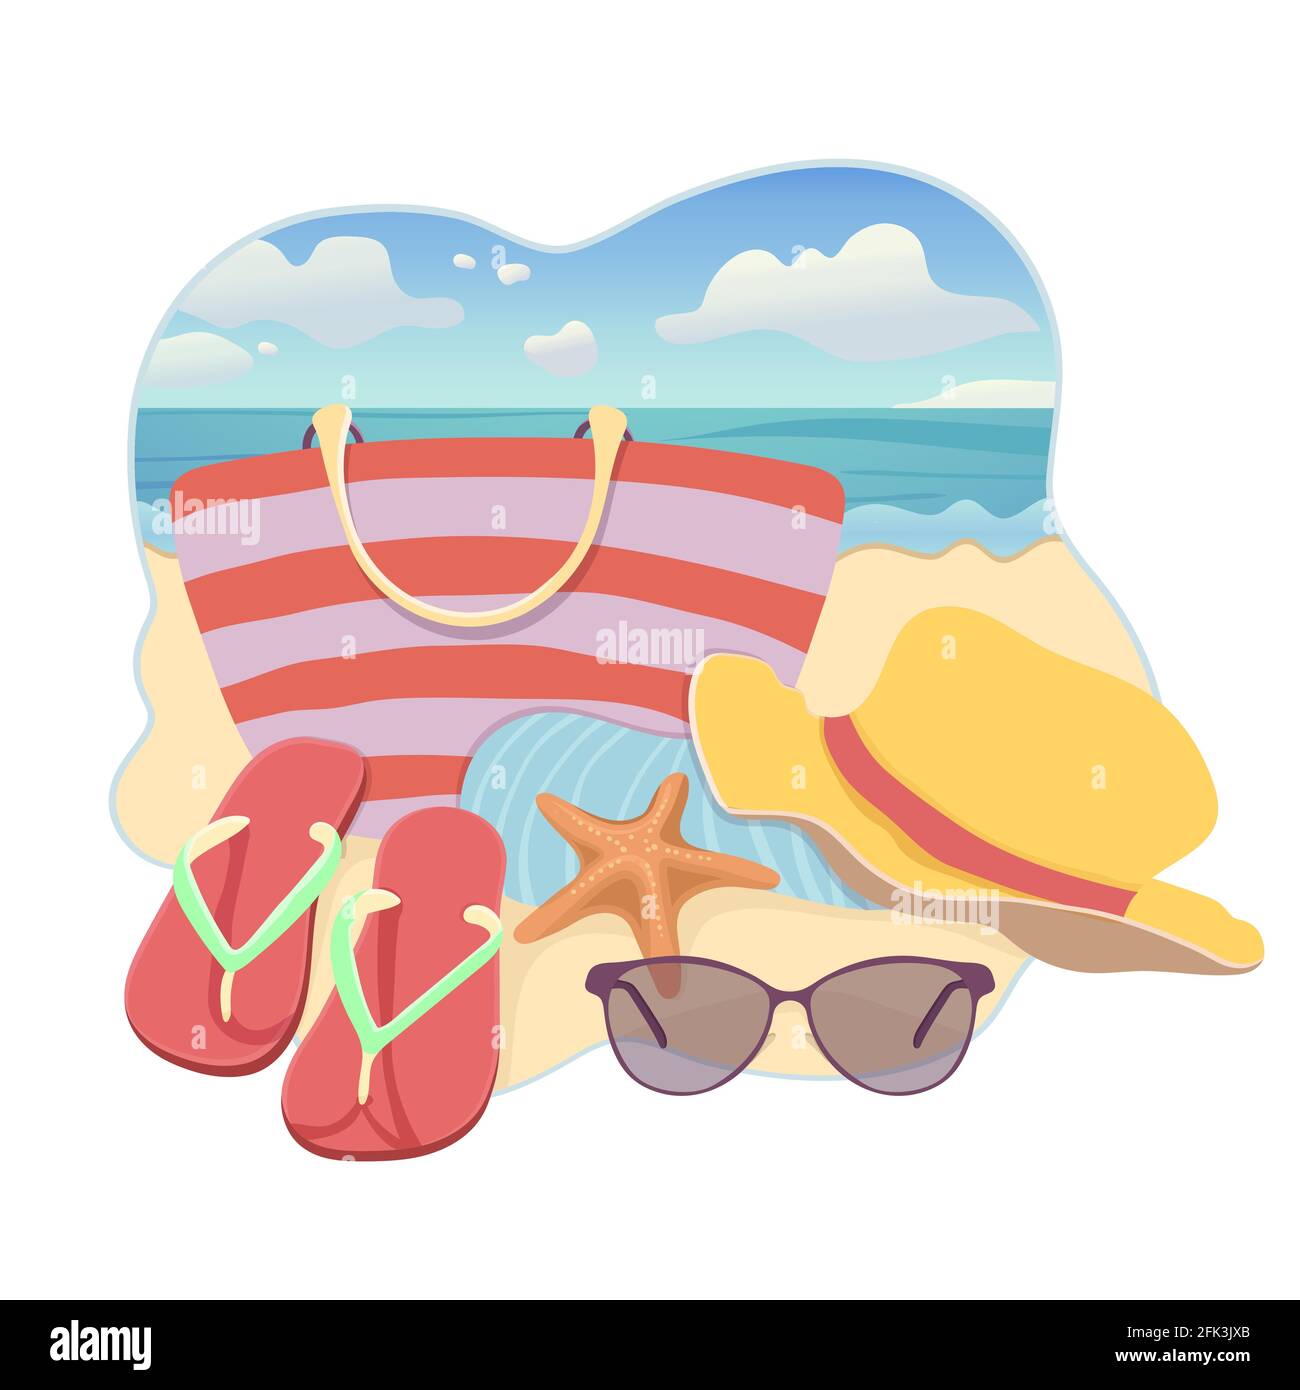 Accesorios de playa, ilustración plana, diseño de pegatinas de vacaciones  de verano. Bolsa de playa, sombrero de ala, chanclas, toalla, gafas de sol  en la playa de arena junto al mar Imagen